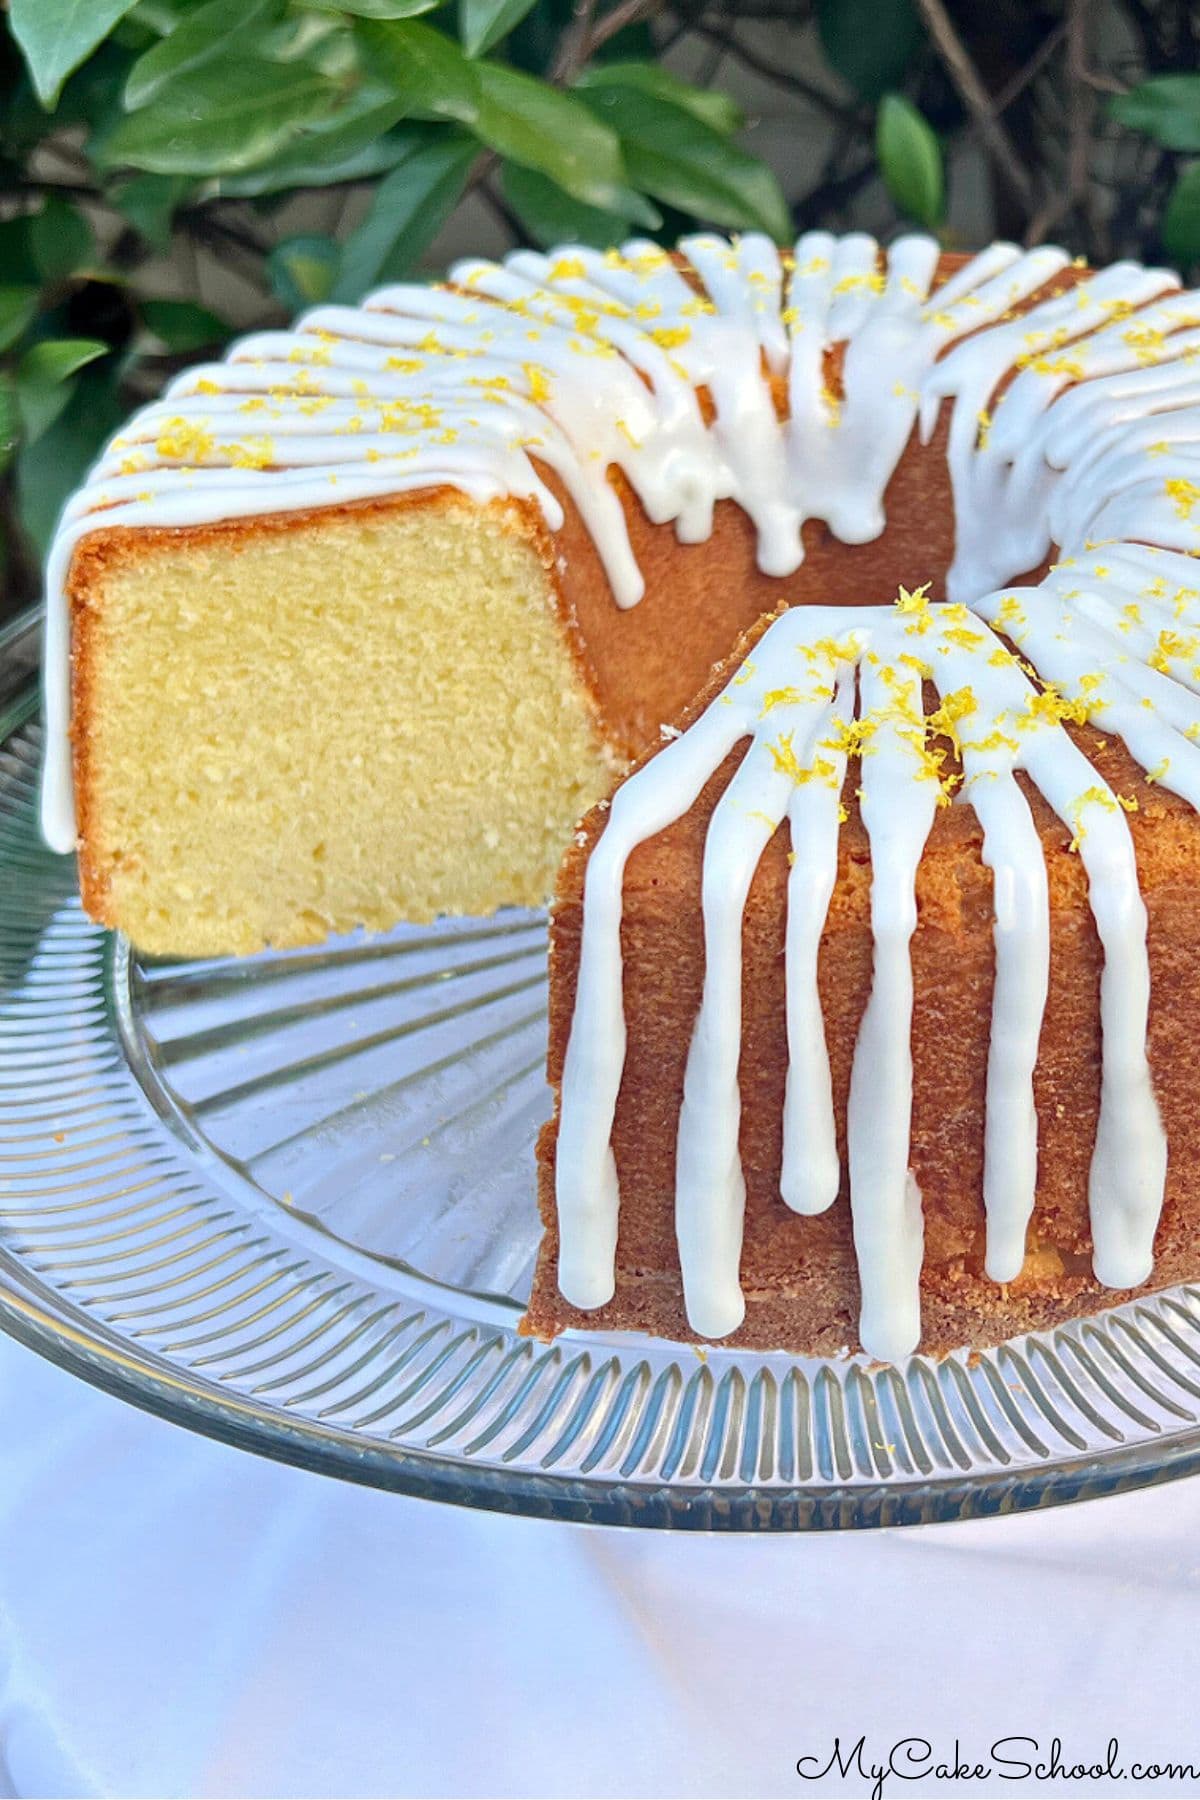 Lemon Ricotta Cake, sliced, on a pedestal.